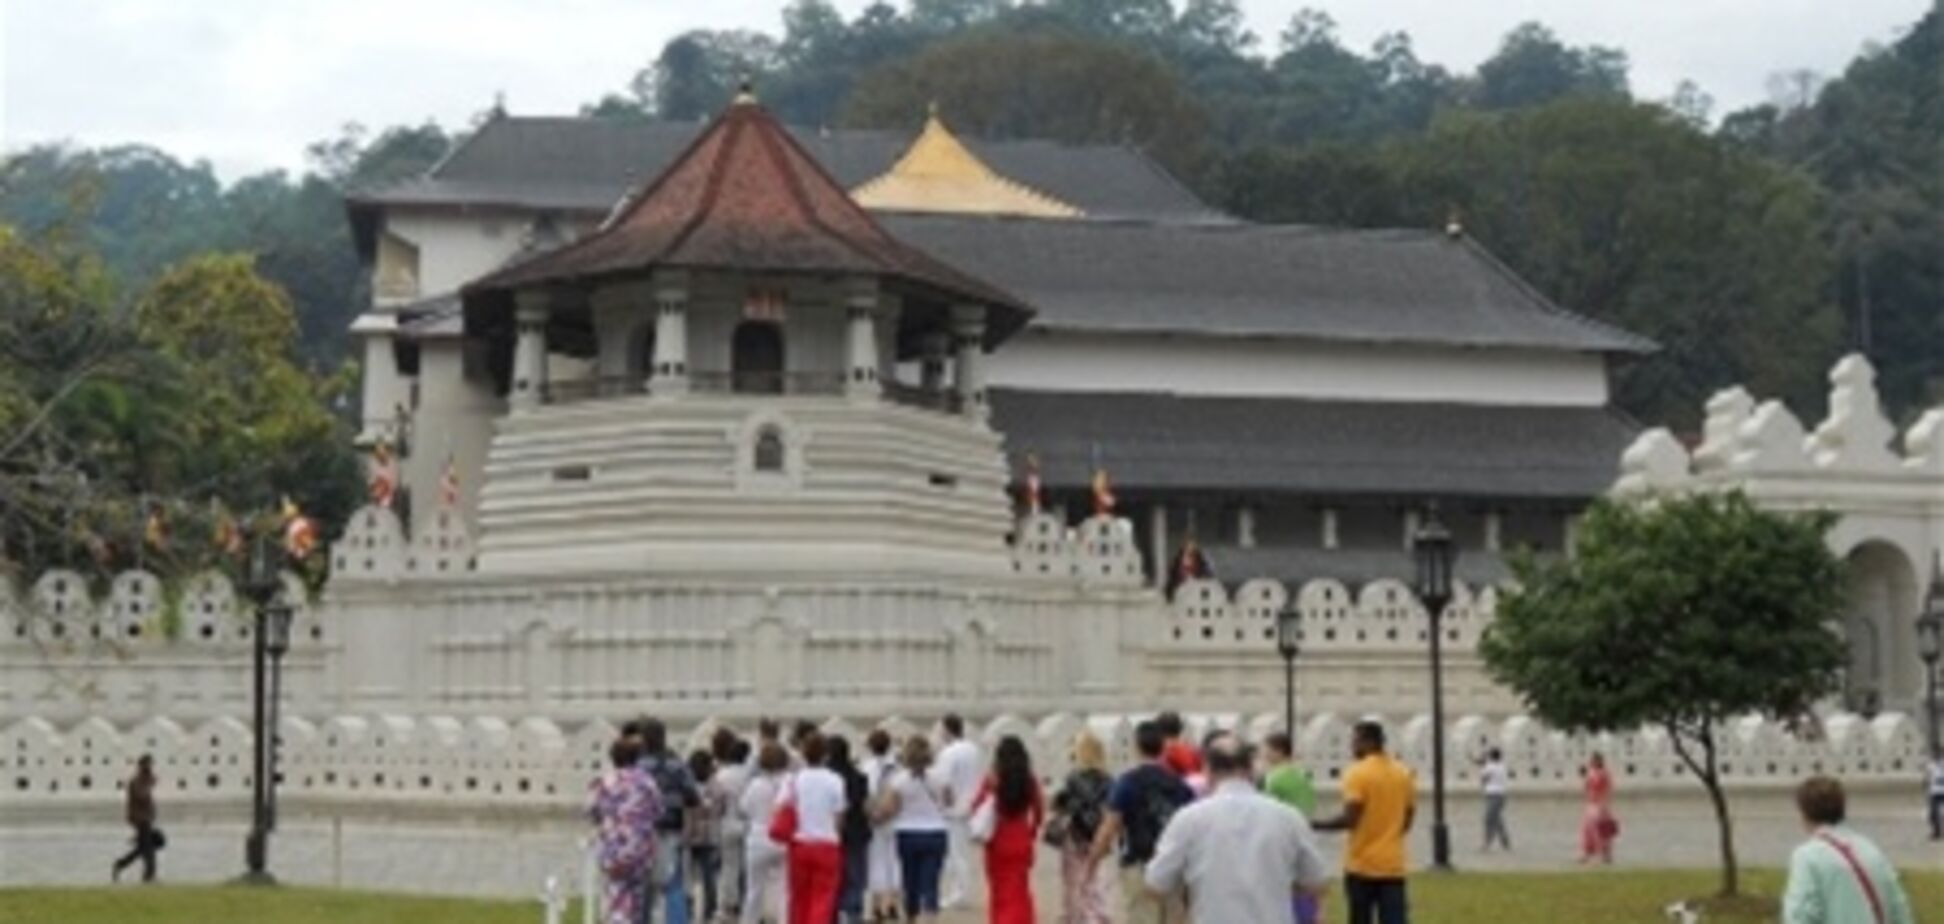 Декабрь 2012 стал рекордным по количеству прибывших туристов в Шри-Ланку